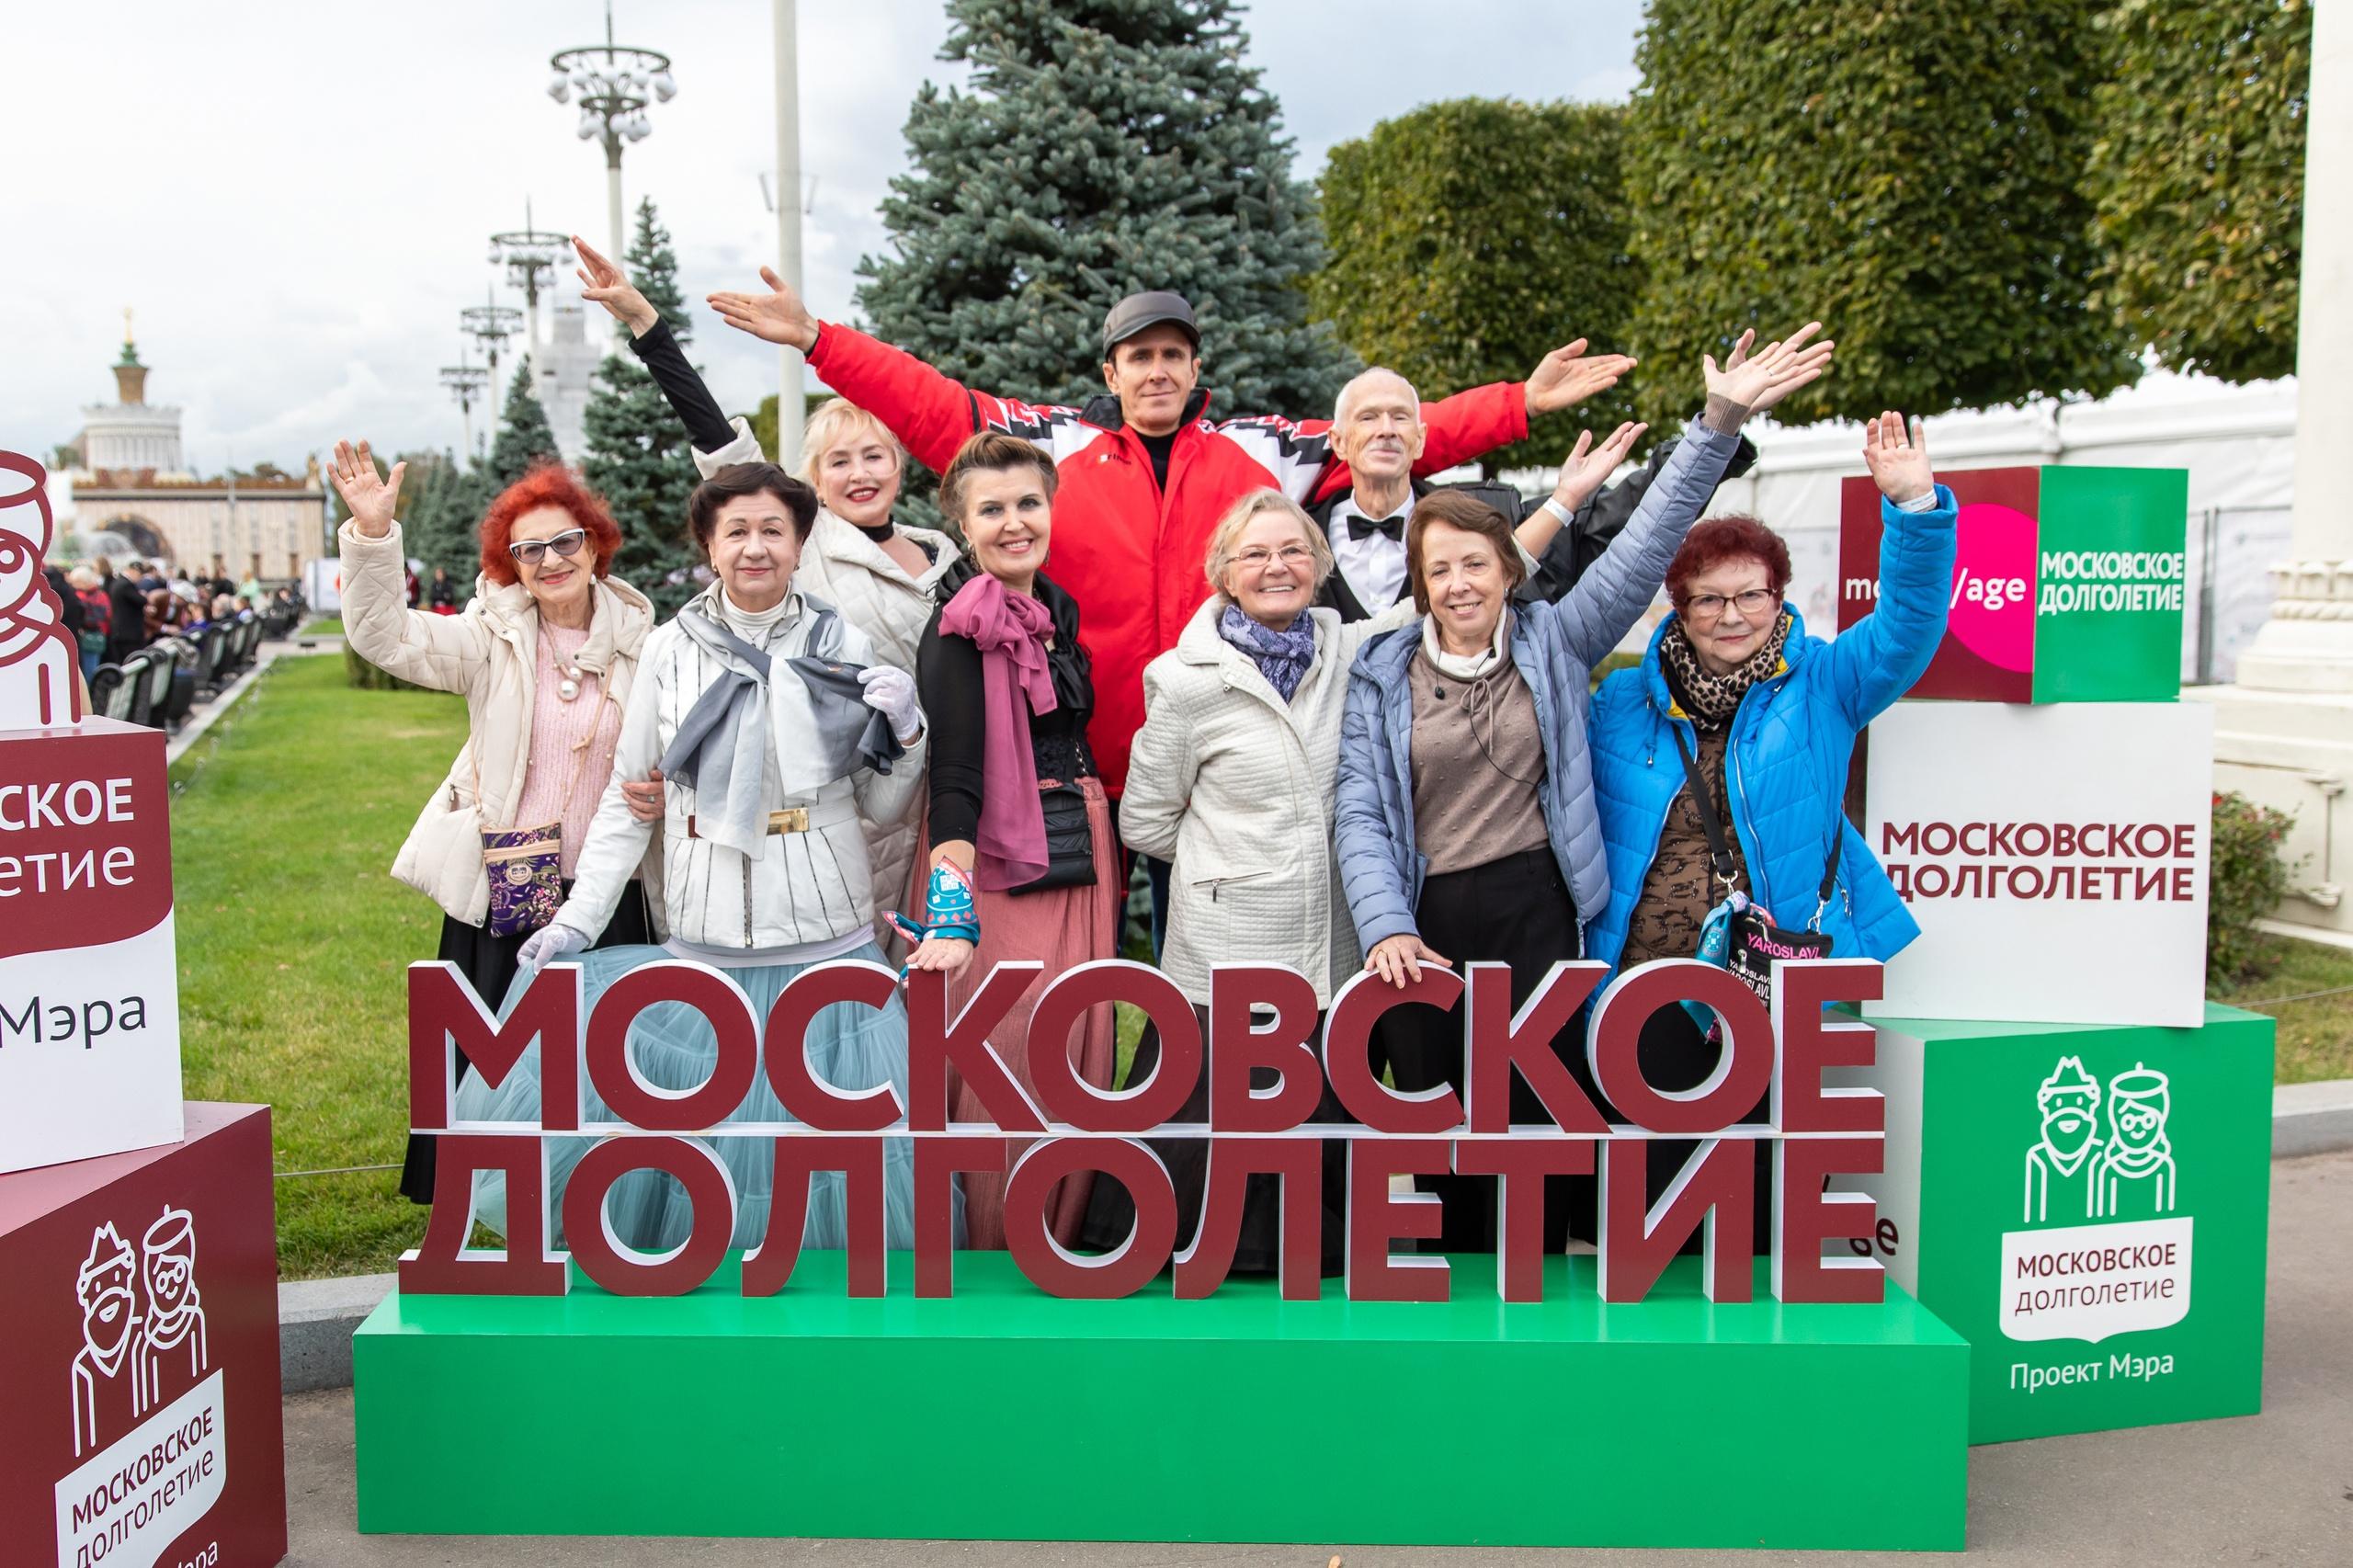 Программа "Московское долголетие" действует уже 10 лет